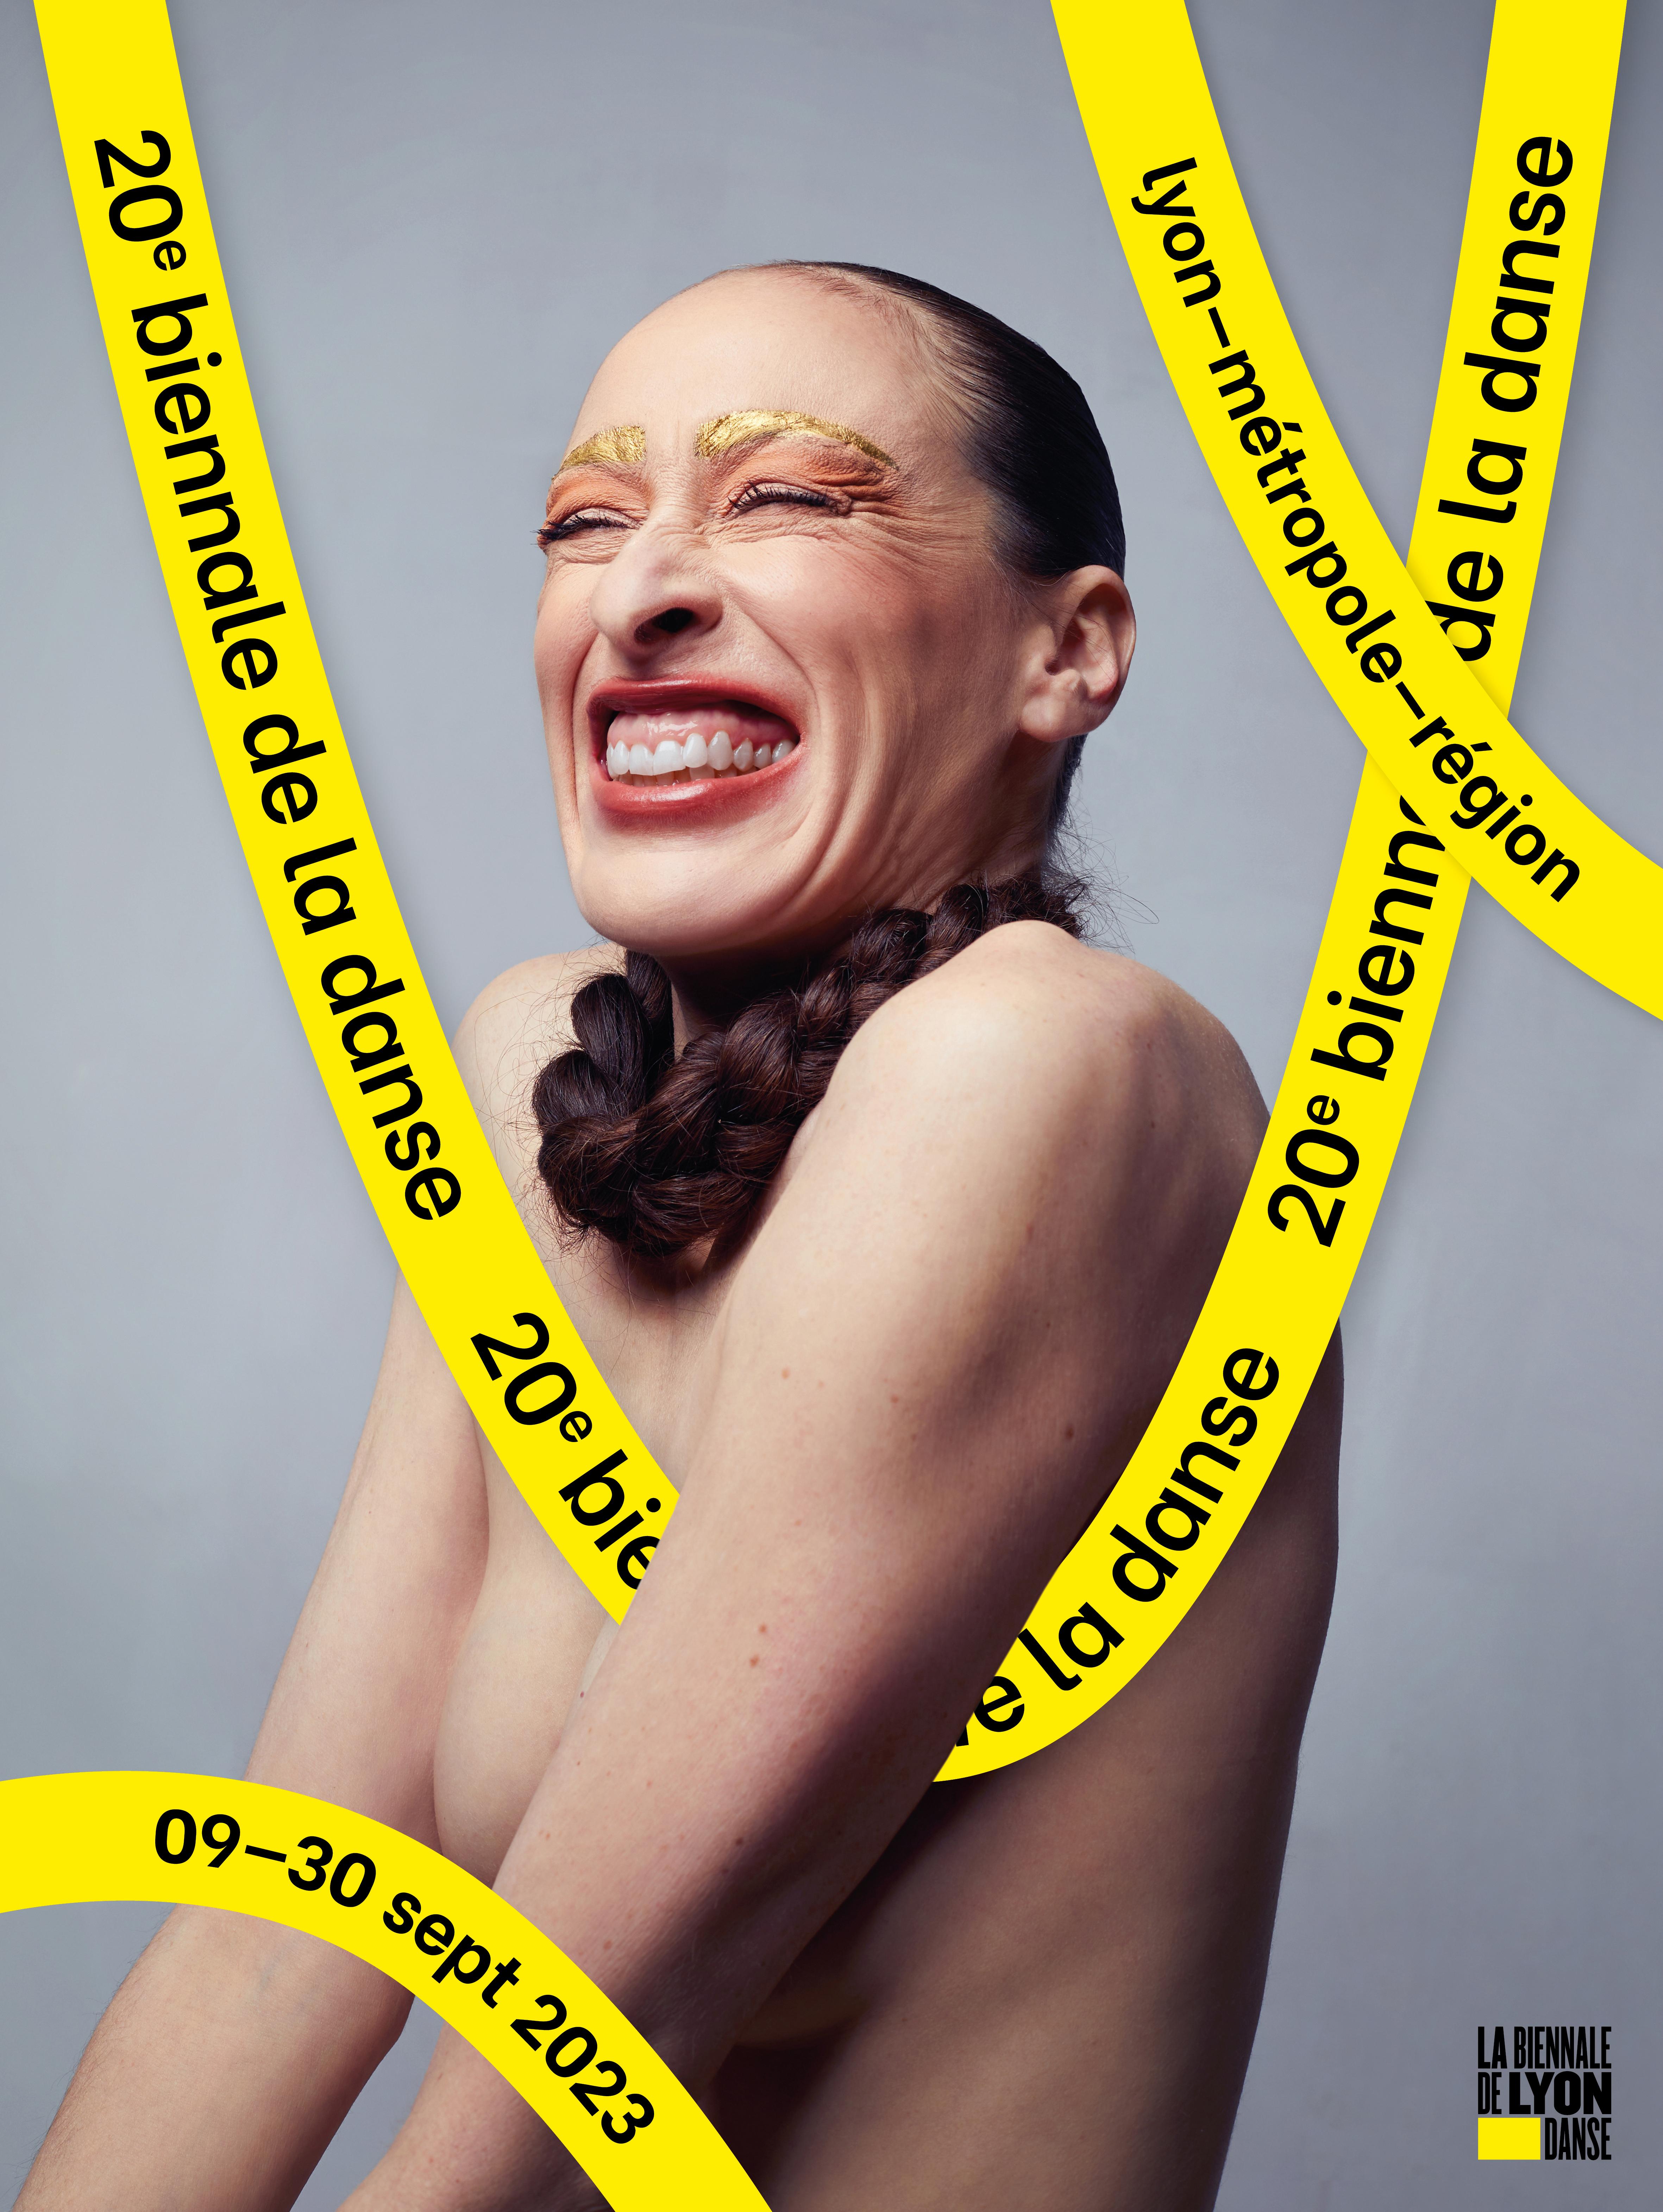 Affiche de la 20e édition de la biennale de la danse de Lyon